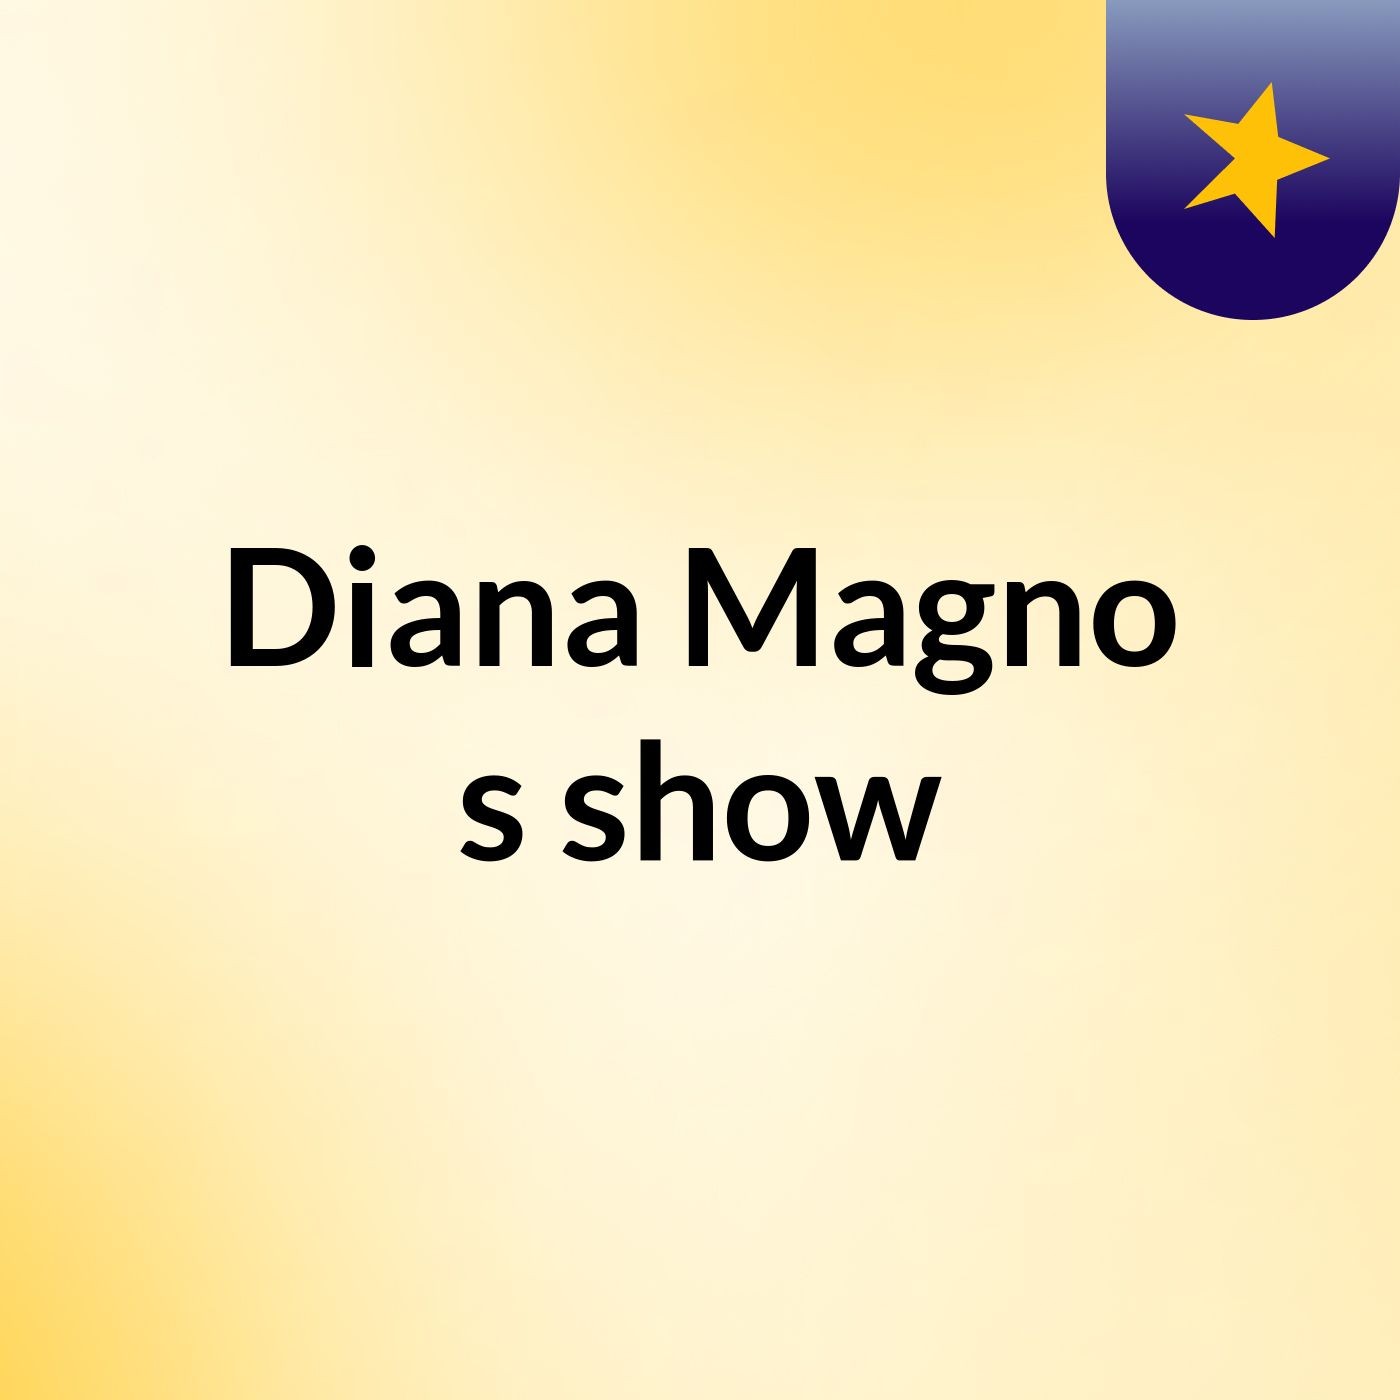 Diana Magno's show